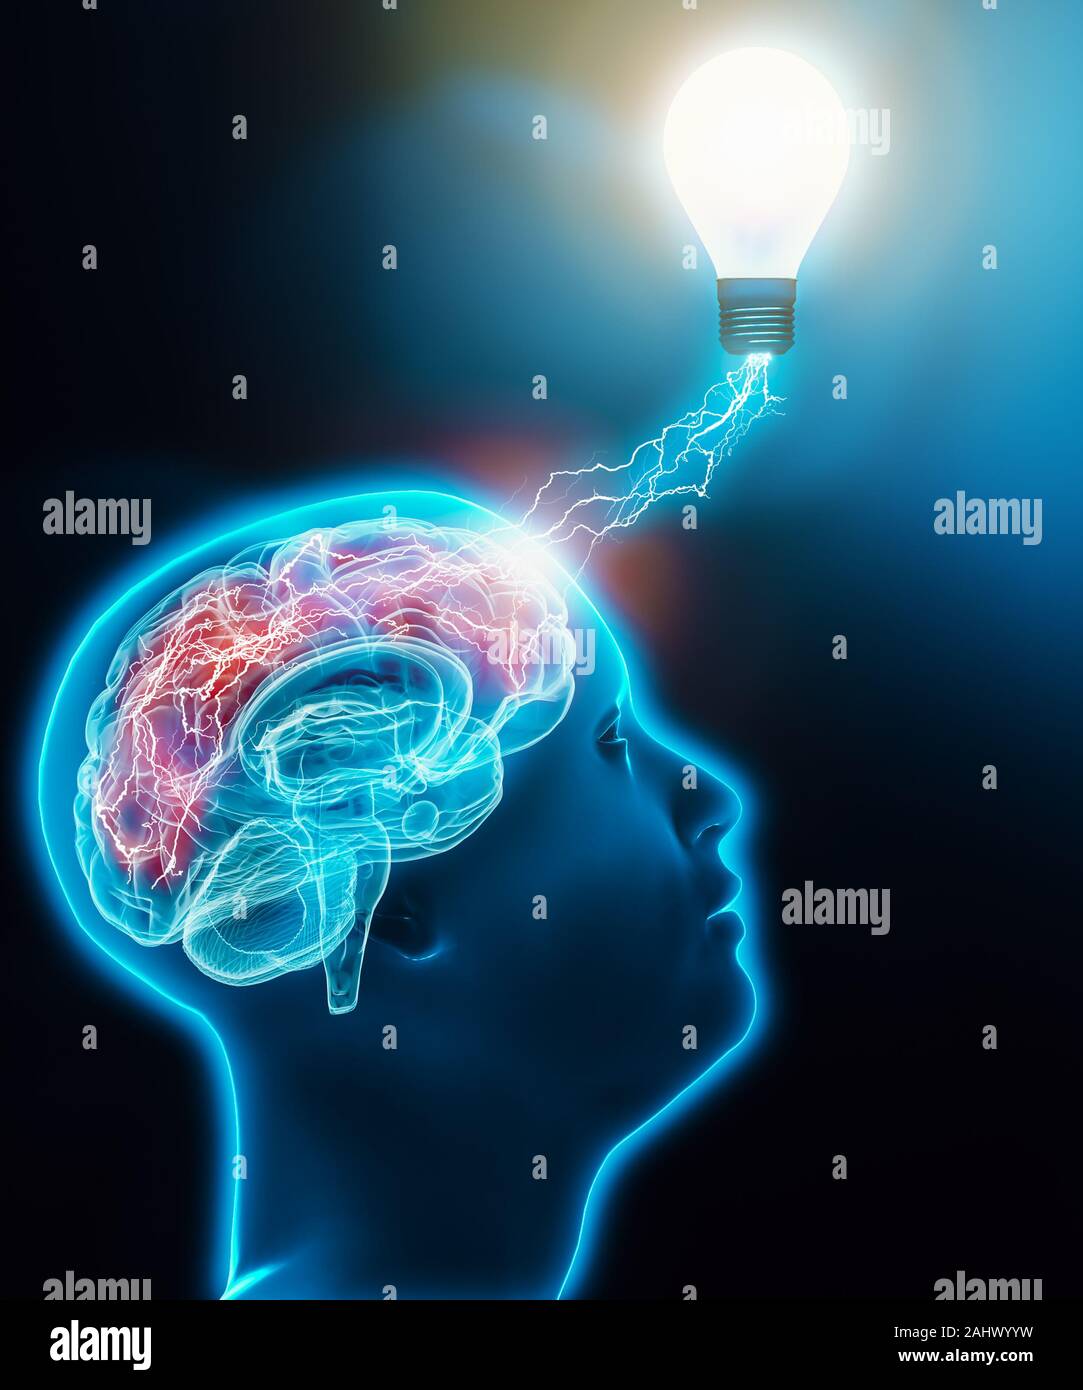 Maschio umano profilo testa cercando con il cervello collegato ad una lampadina elettrica con i fulmini. Attività cerebrale, intelligenza e immaginazione, idea, neuroscienze, Foto Stock